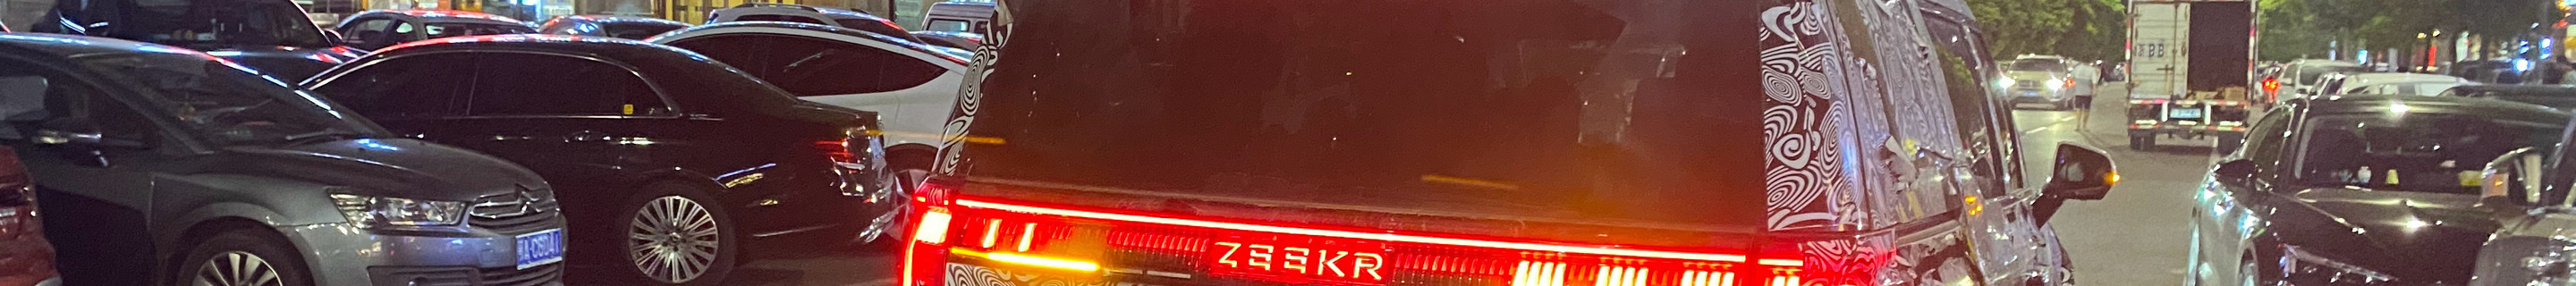 Zeekr 009